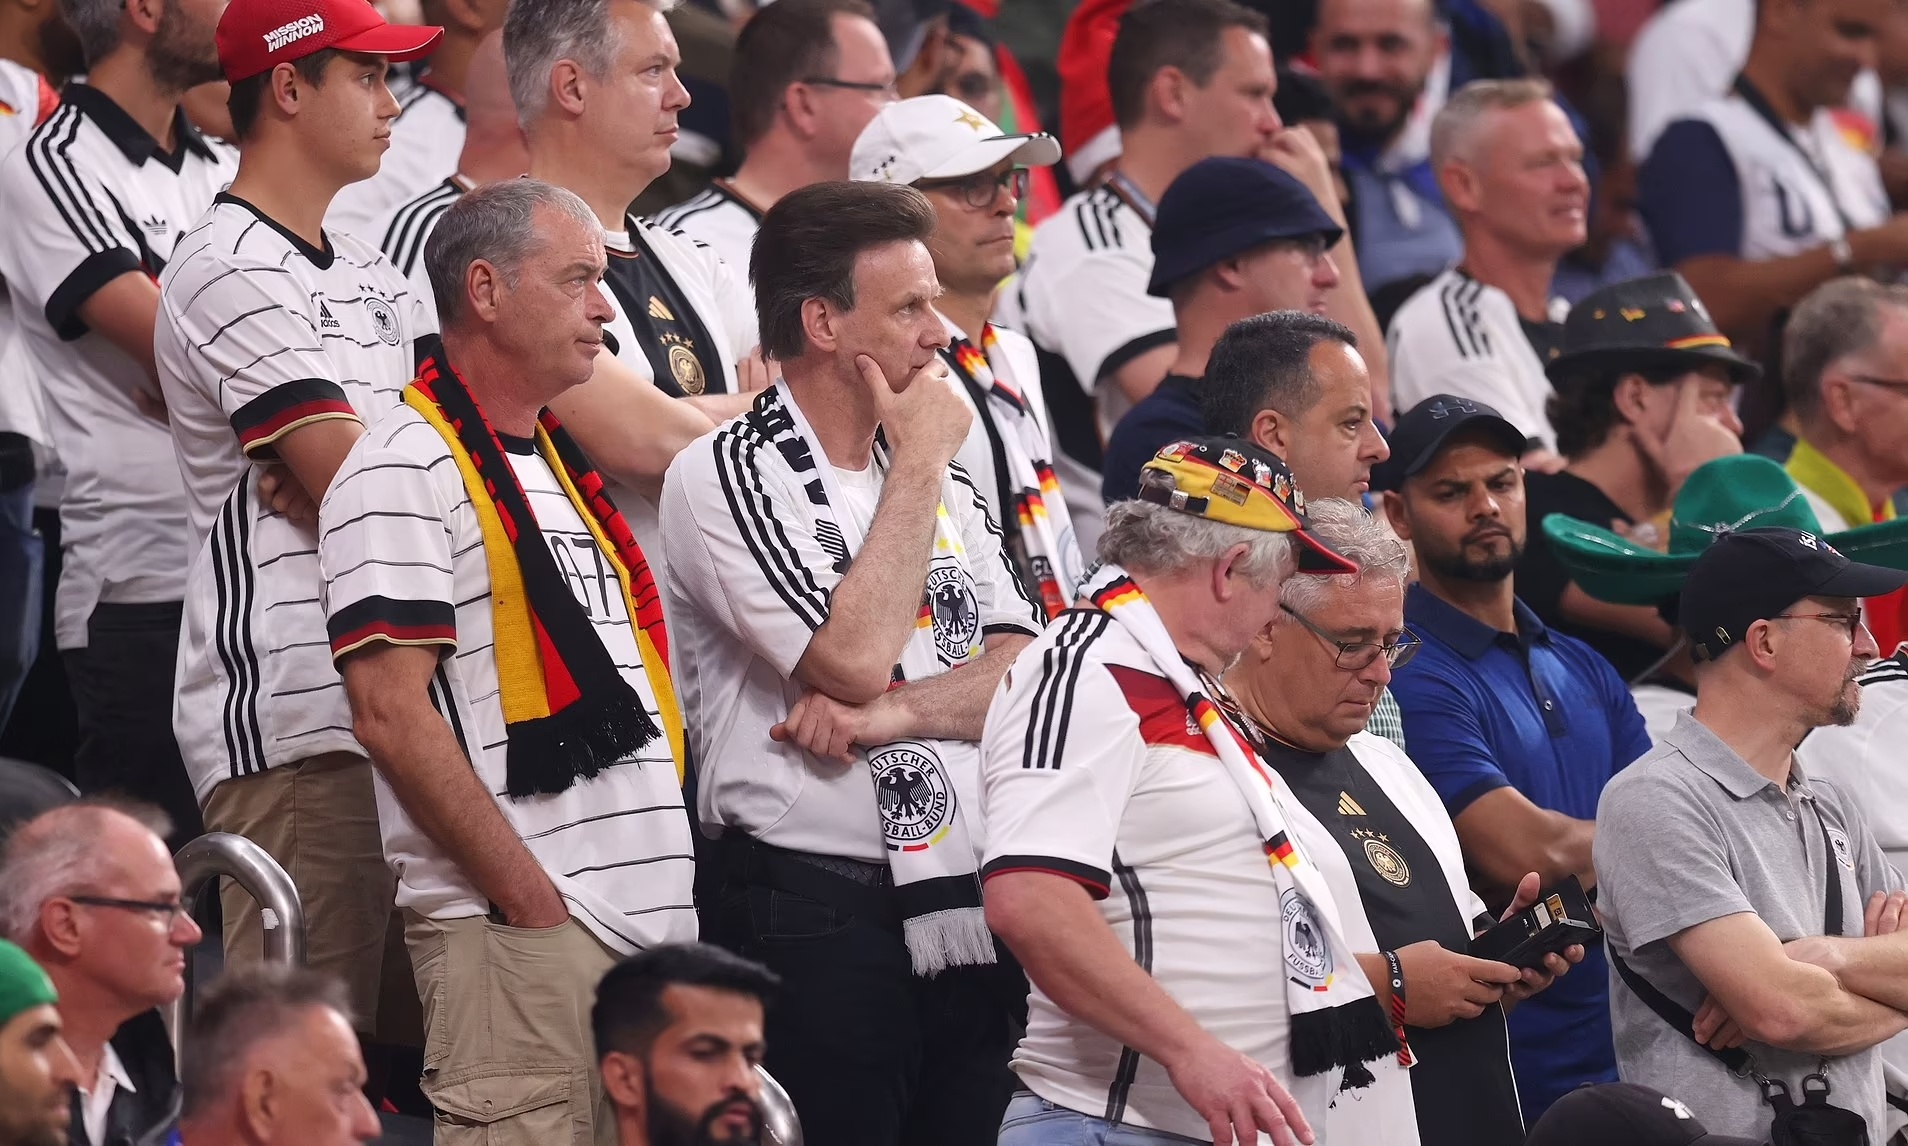 CĐV Đức bật khóc khi đội bóng bị loại khỏi World Cup - ảnh 5